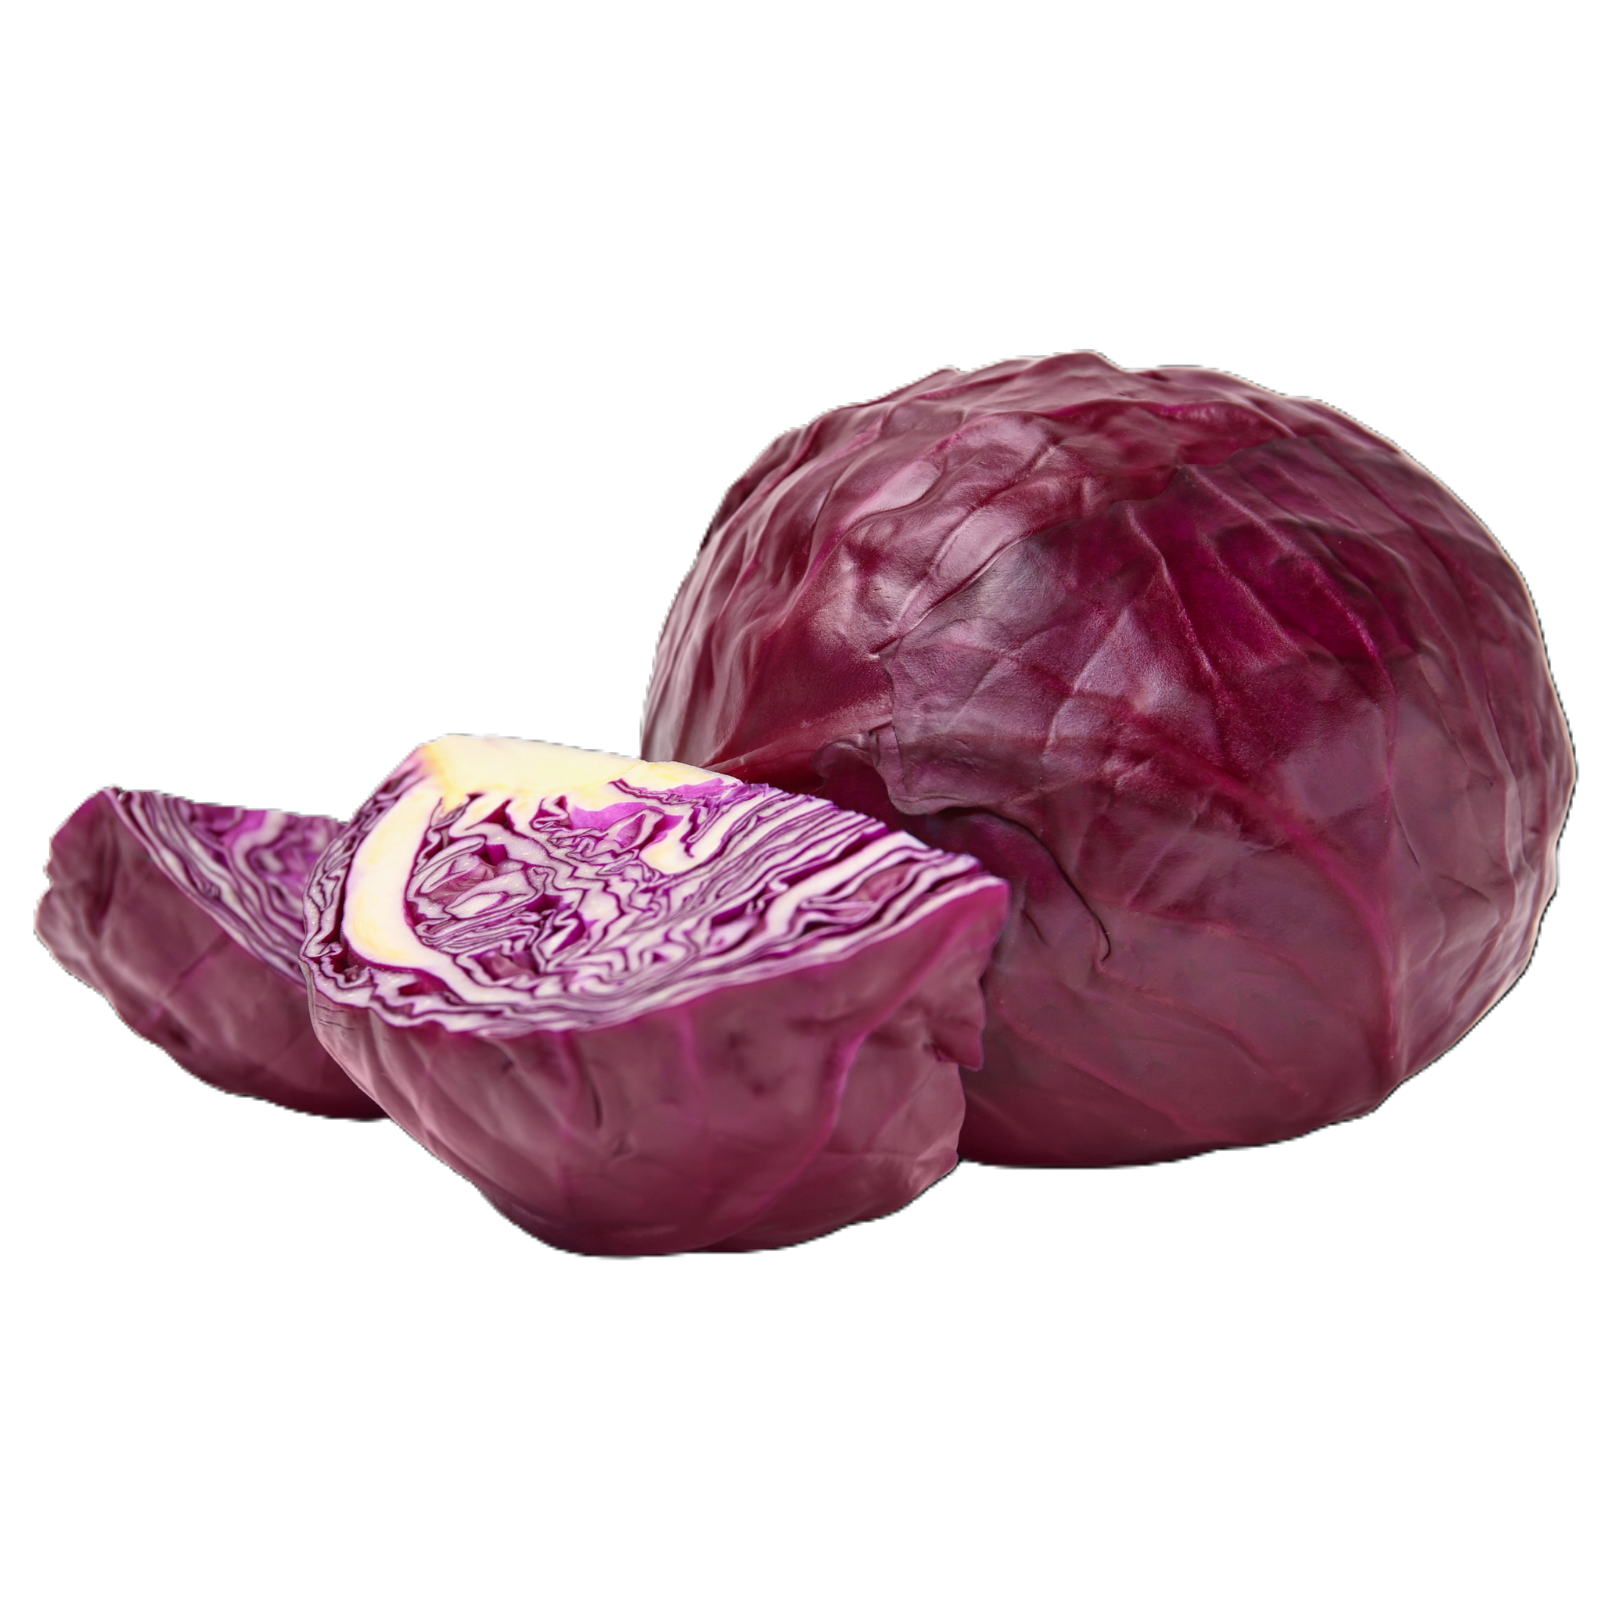 Wholegood Red Cabbage, 1pcs